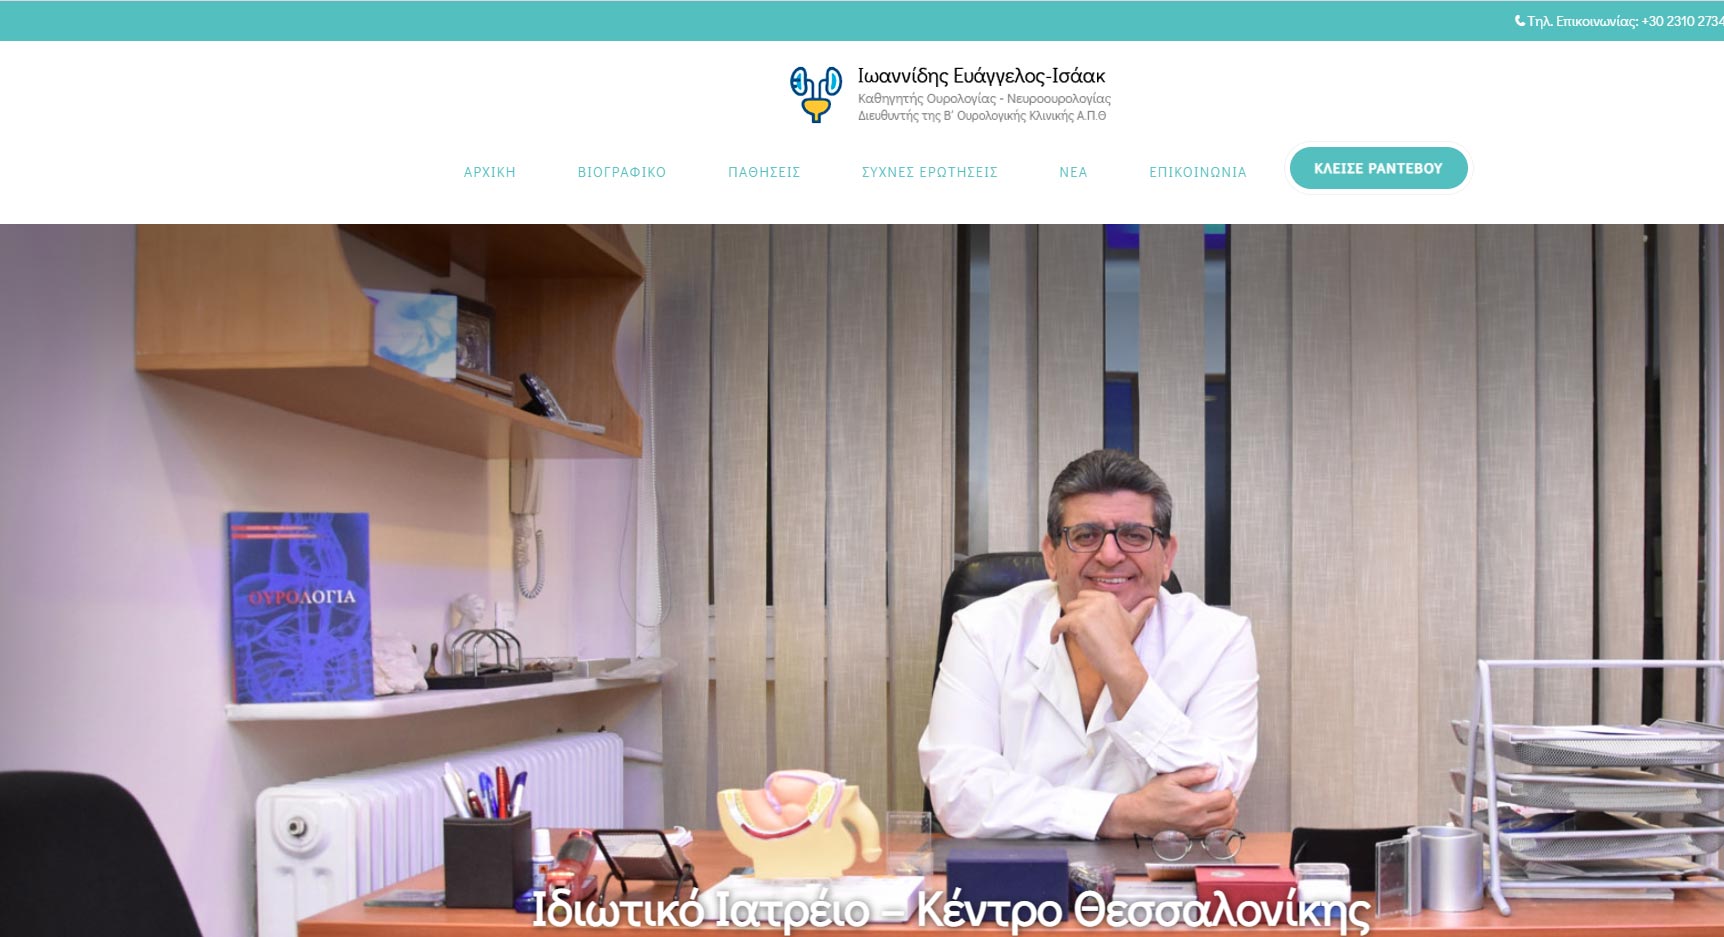 Dr. Ioannidis Website